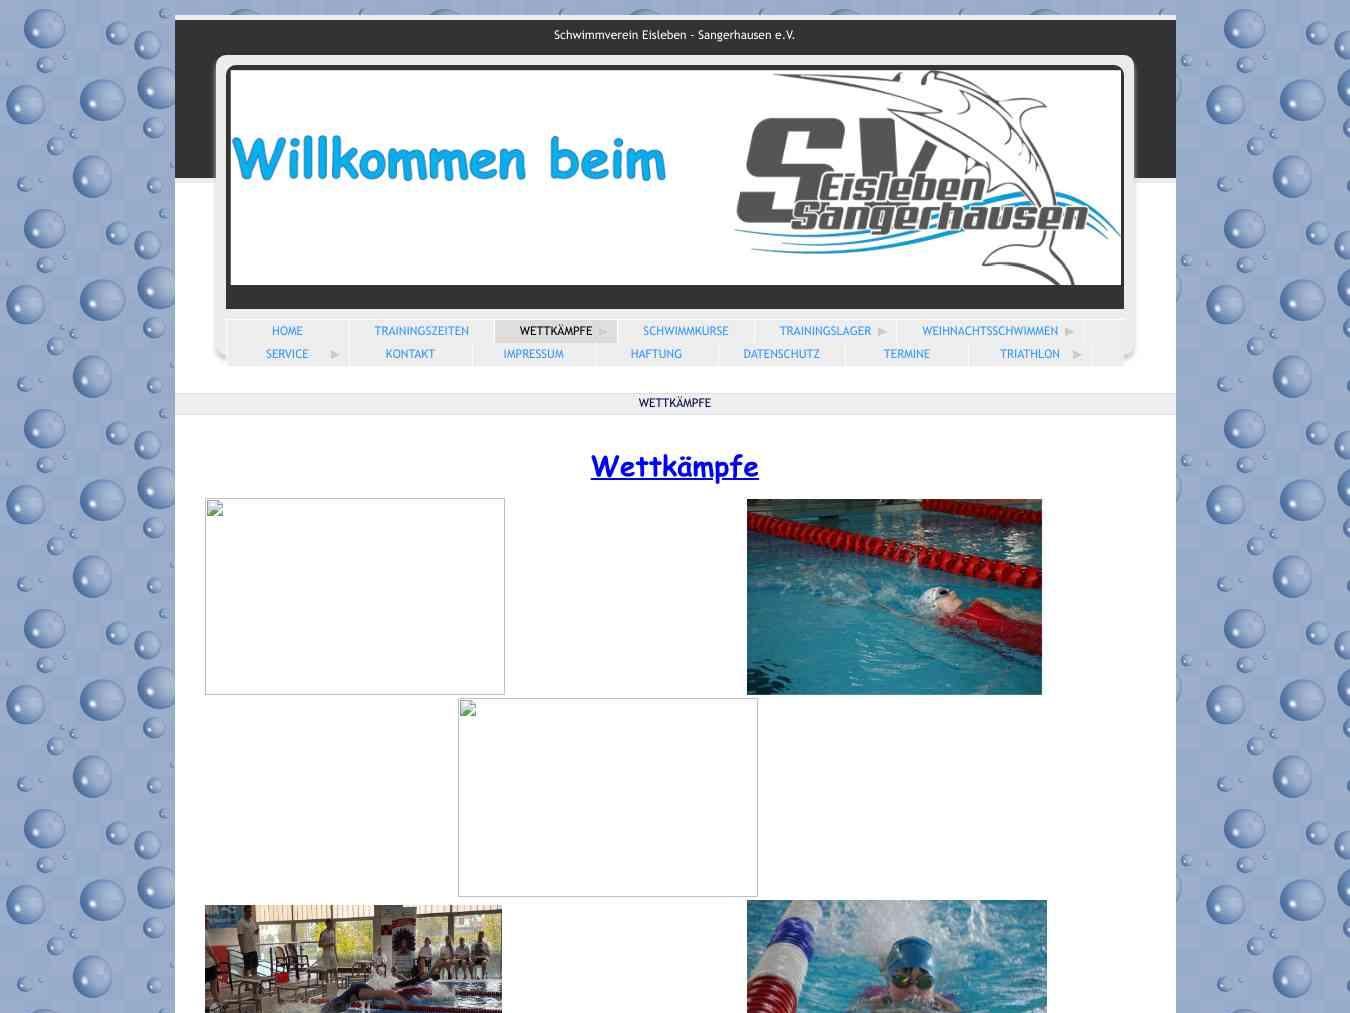 Veranstalterhomepage - http://www.schwimmverein-eisleben.de/3.html